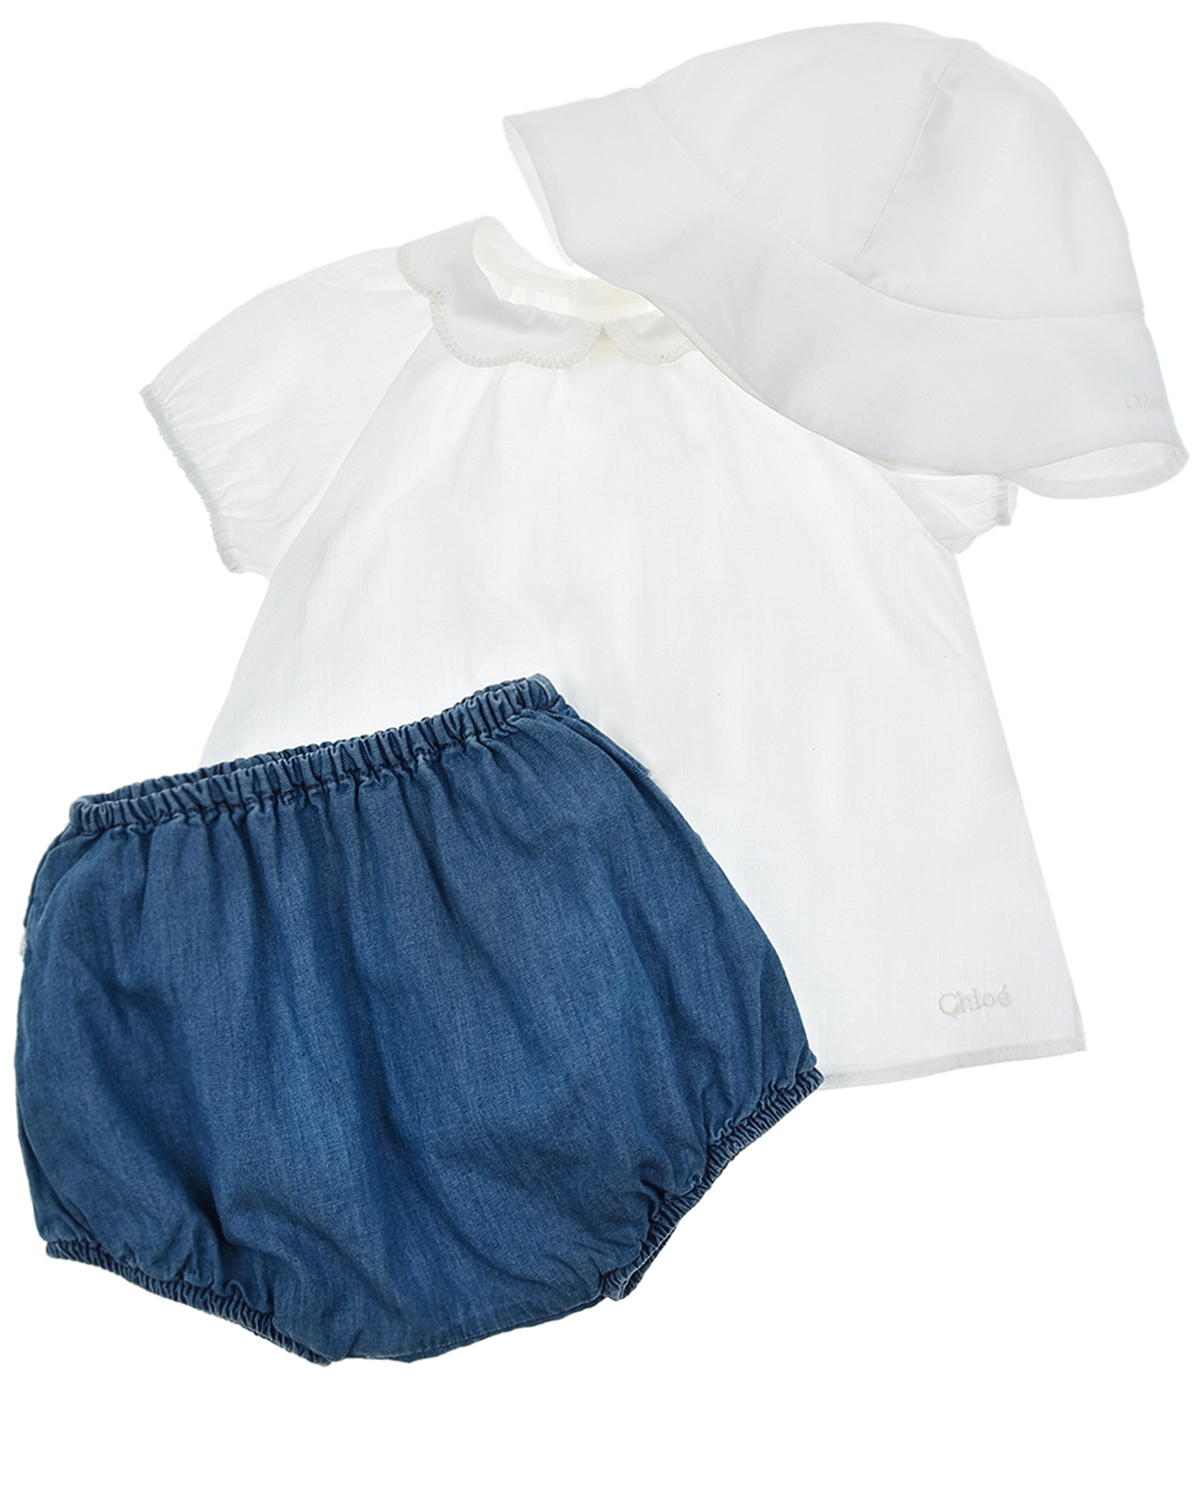 Бело-голубой подарочный набор (блуза, шорты, панама) Chloe детское, размер 68, цвет мультиколор